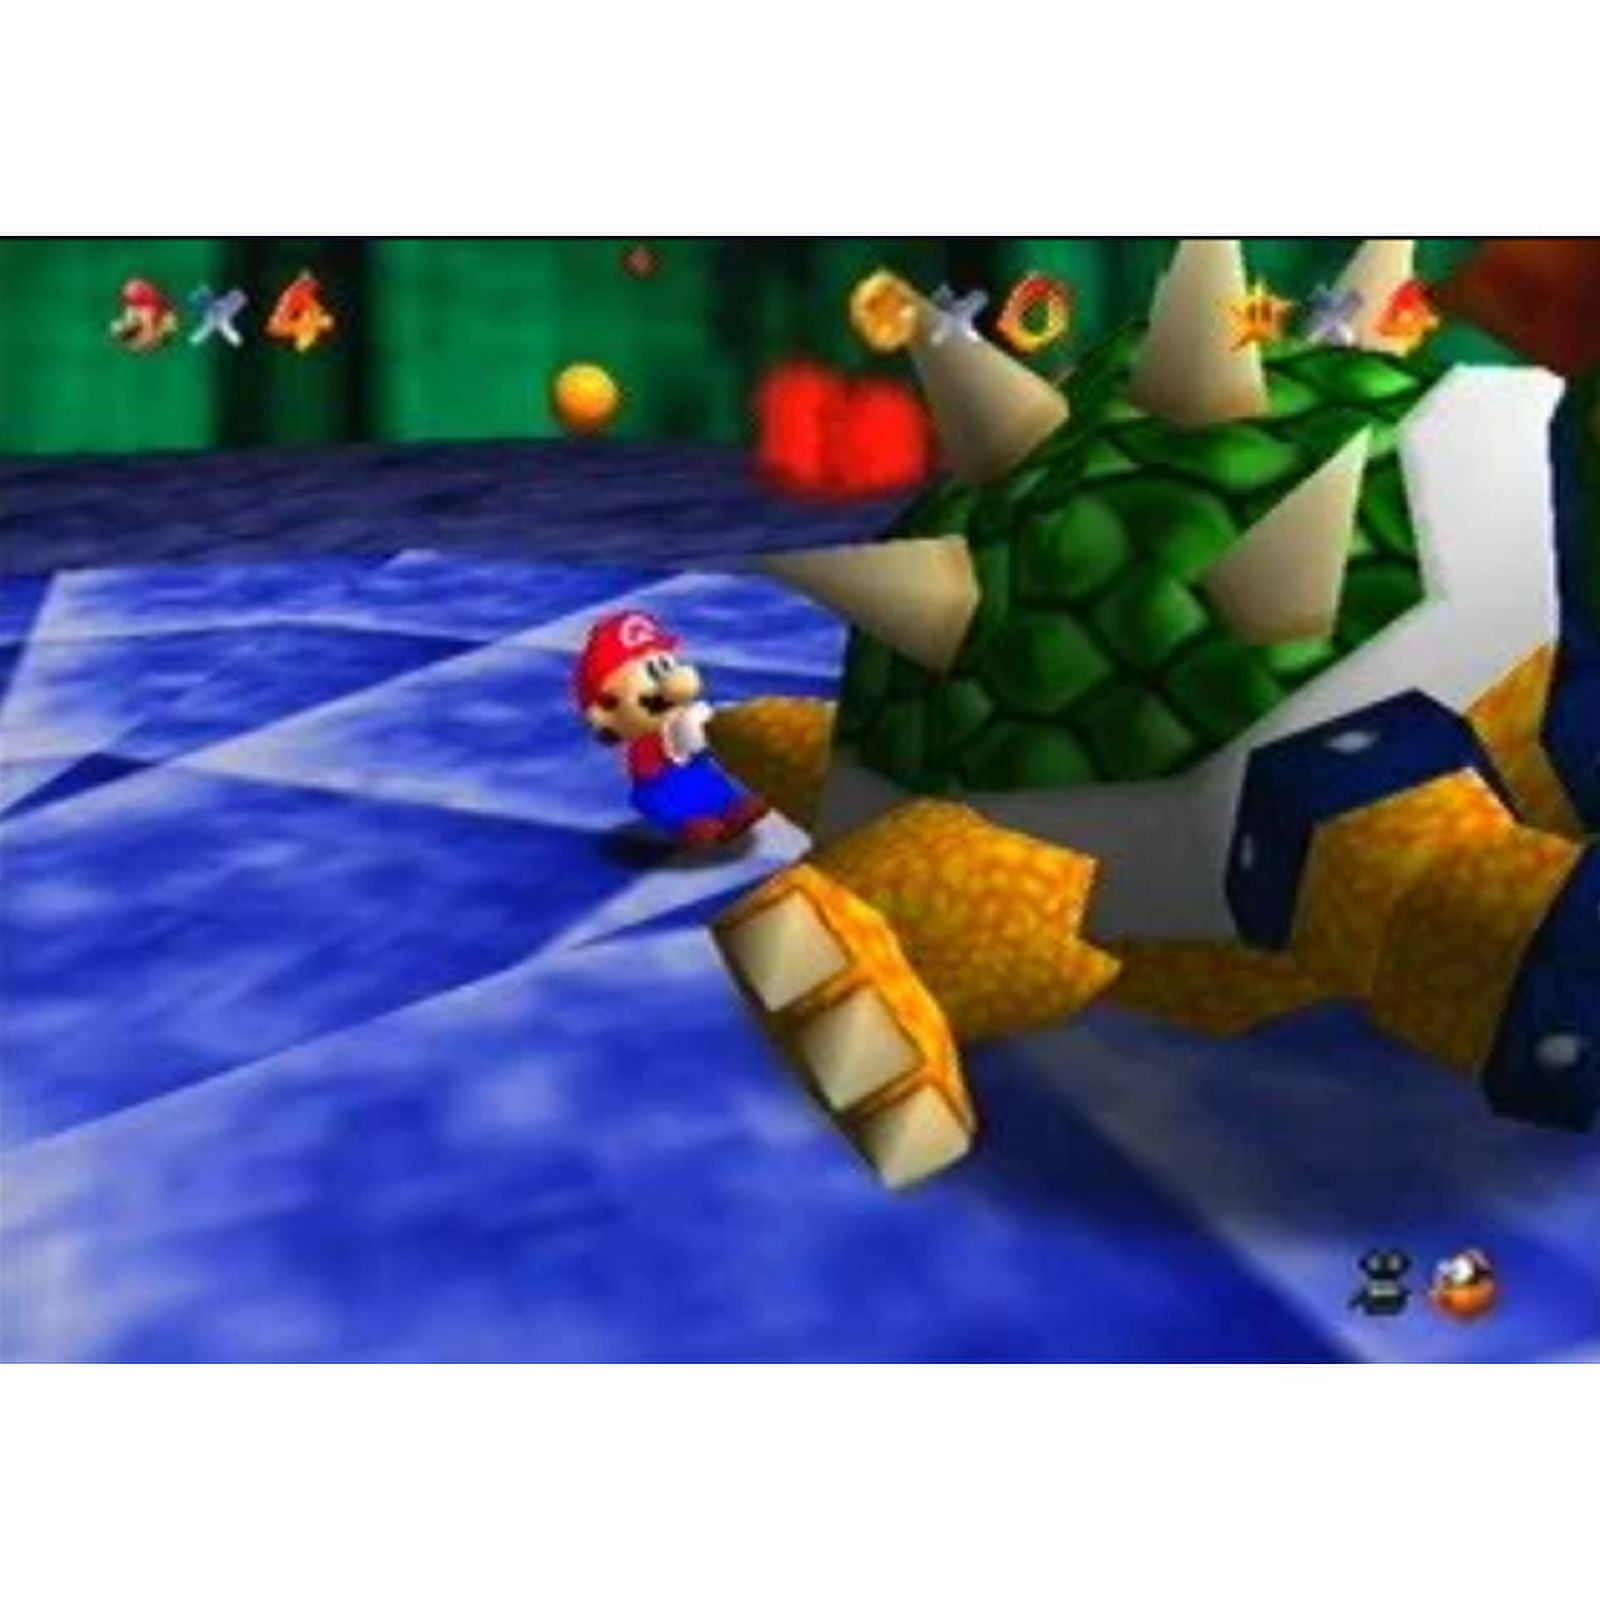 Usado: Jogo Super Mario 64 - N64 em Promoção na Americanas